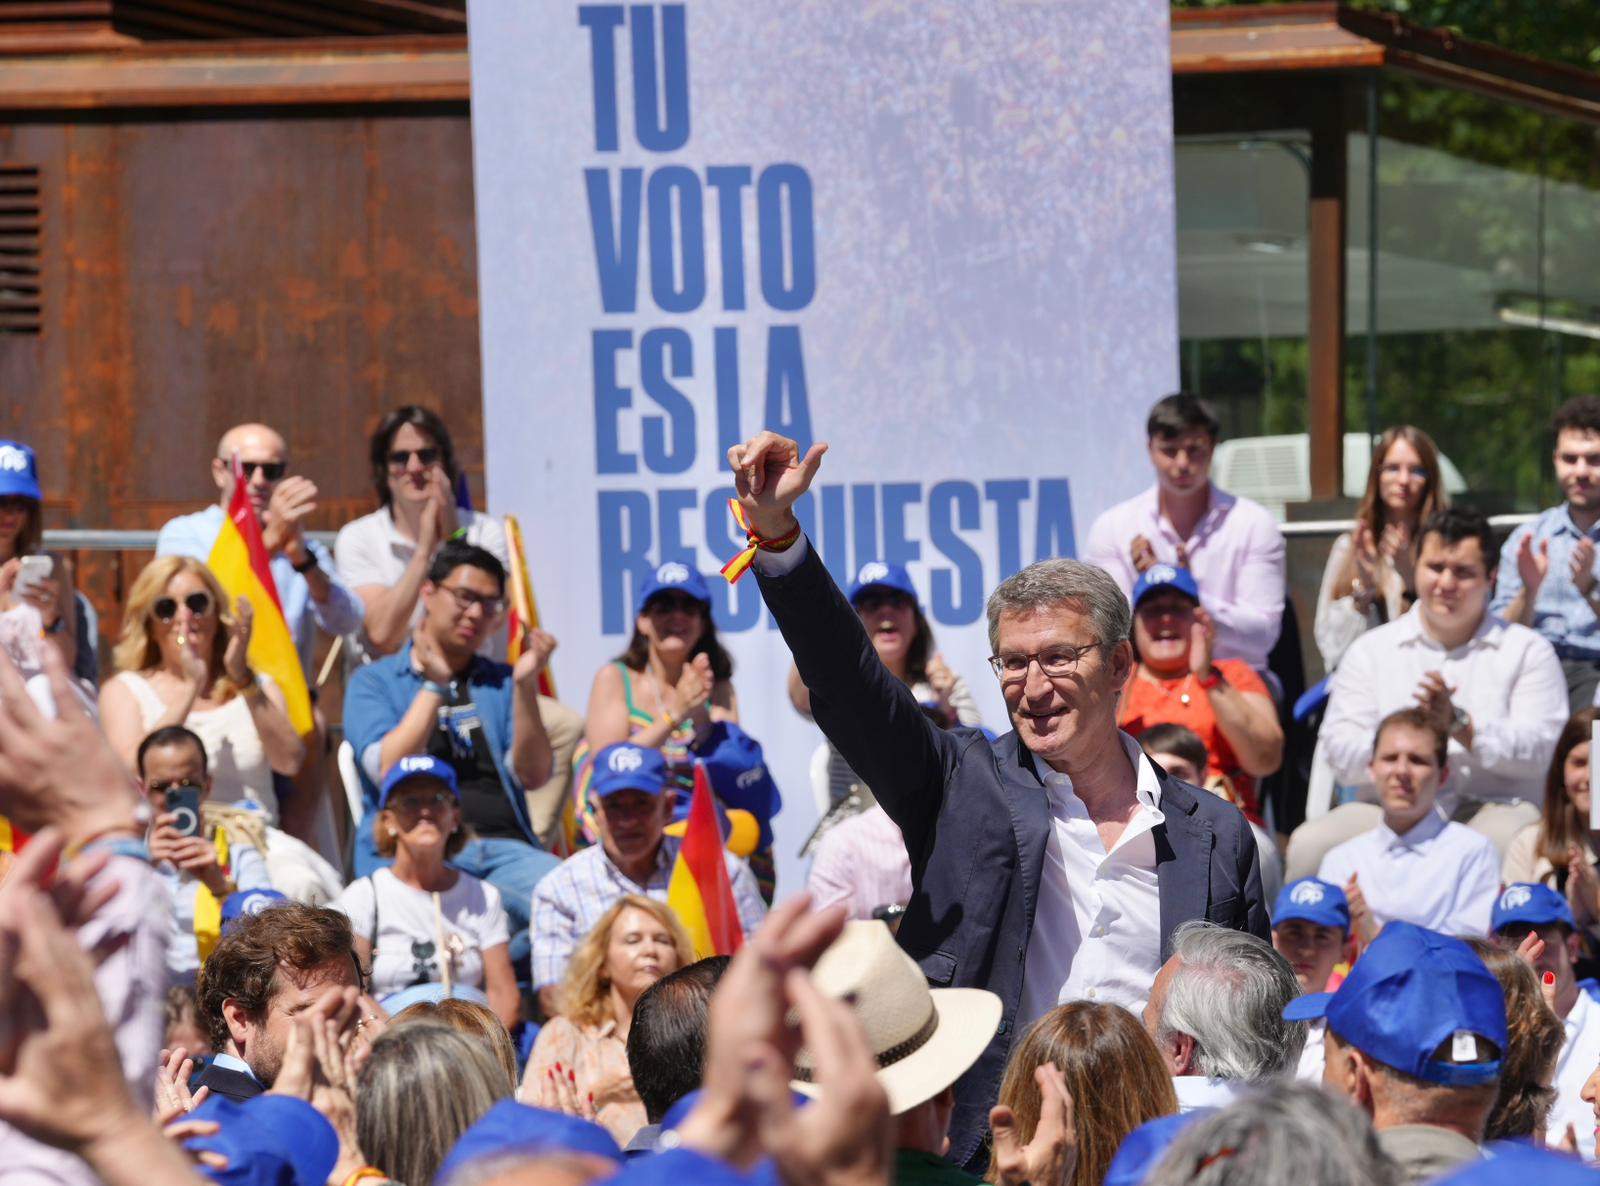 Feijóo qüestiona al PSOE haver aconseguit la fi del procés: "Per què ara demanen un referèndum?"